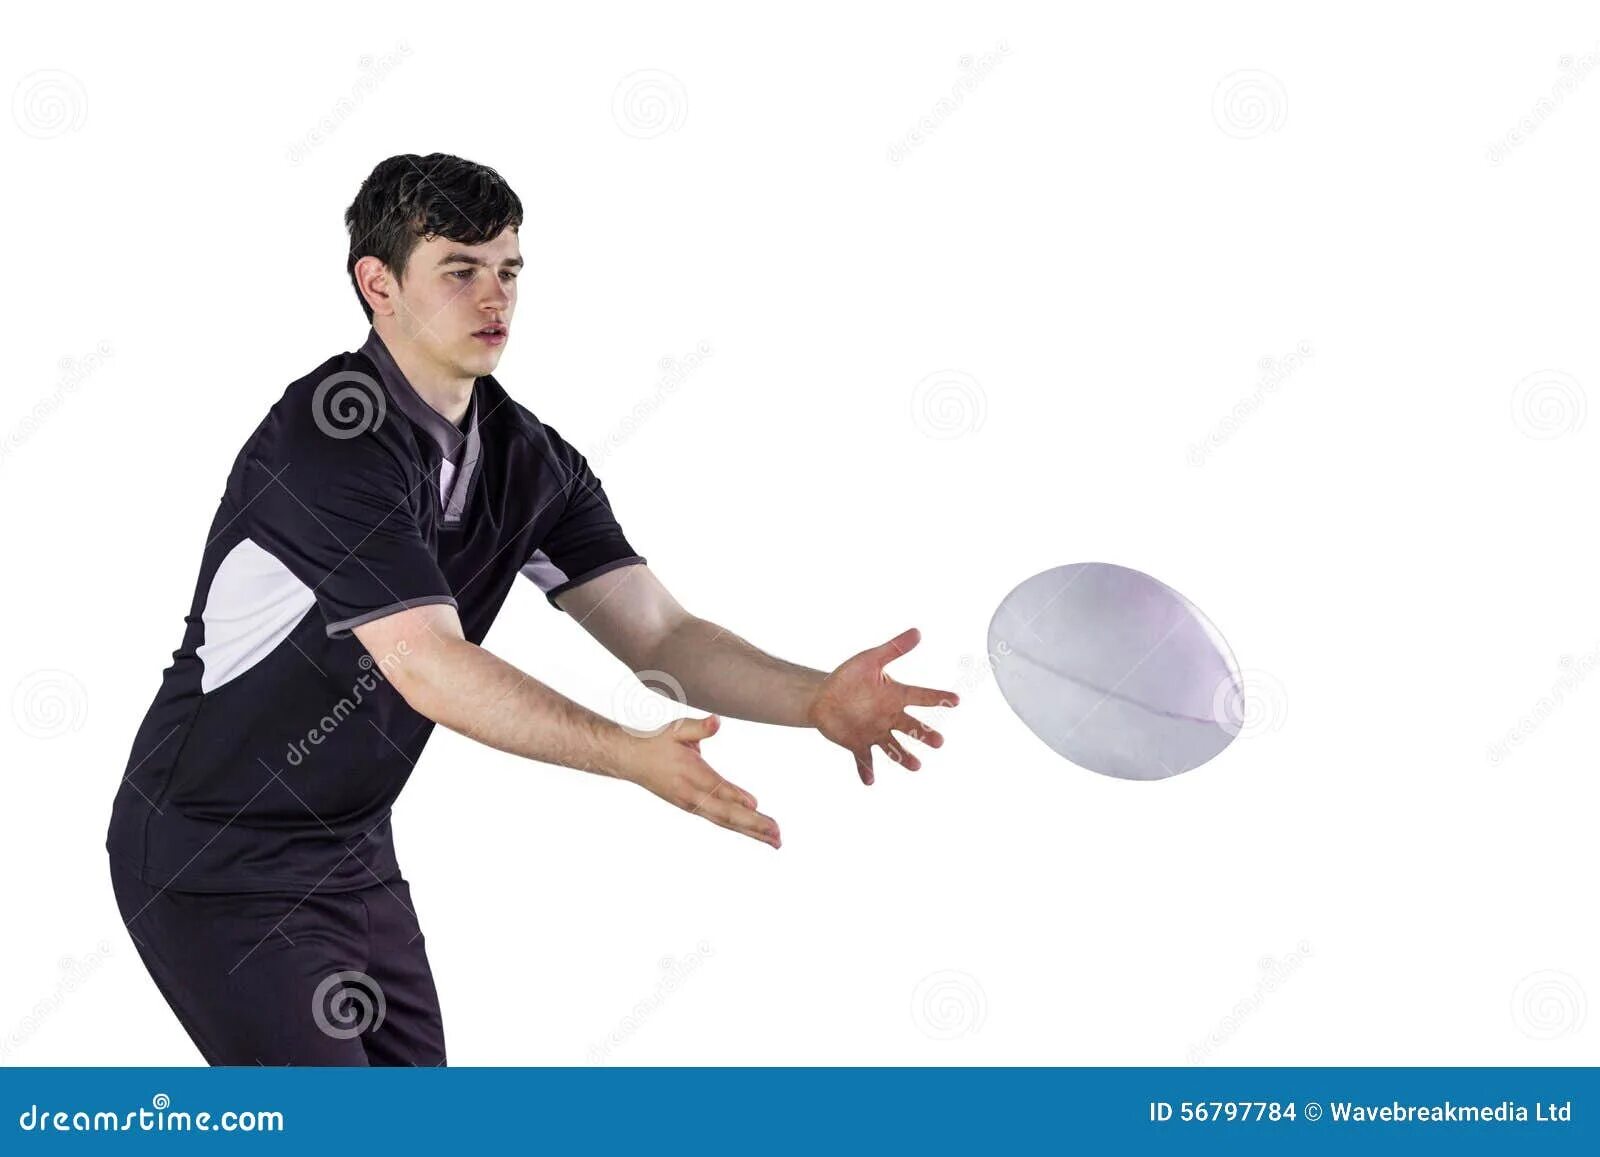 Кинуть шарик. Кидает шар. Человек бросает шар. Шар для кидания. Рука подкидывает мяч.